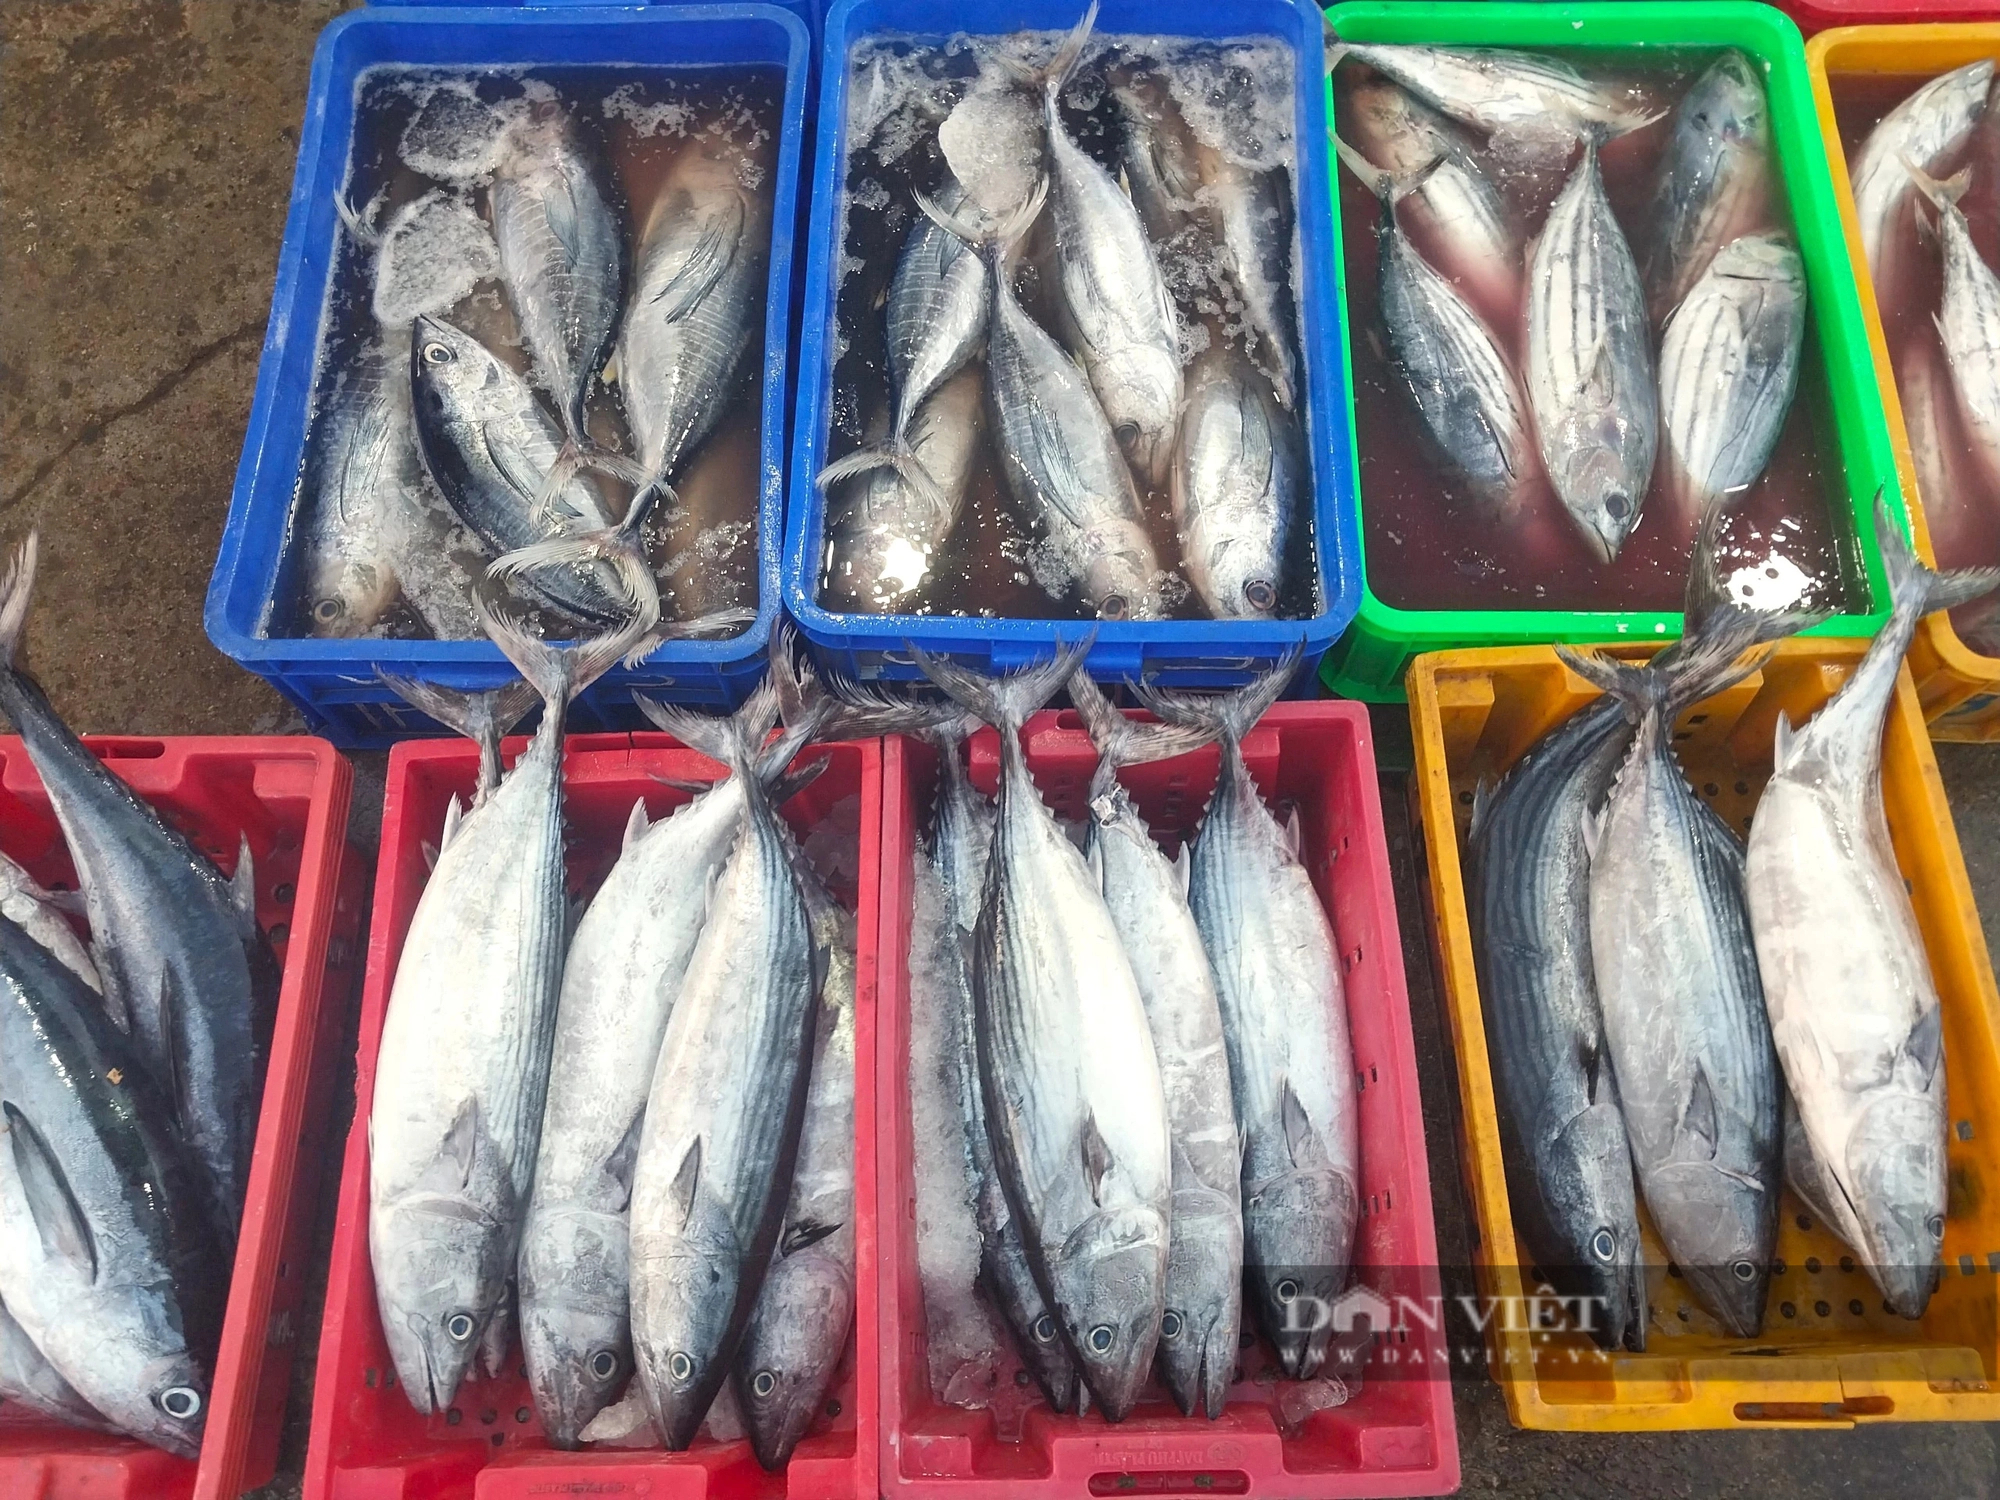 Hối hả ra biển, ngư dân Ninh Thuận kỳ vọng vụ cá nam thuyền đầy tôm cá- Ảnh 5.